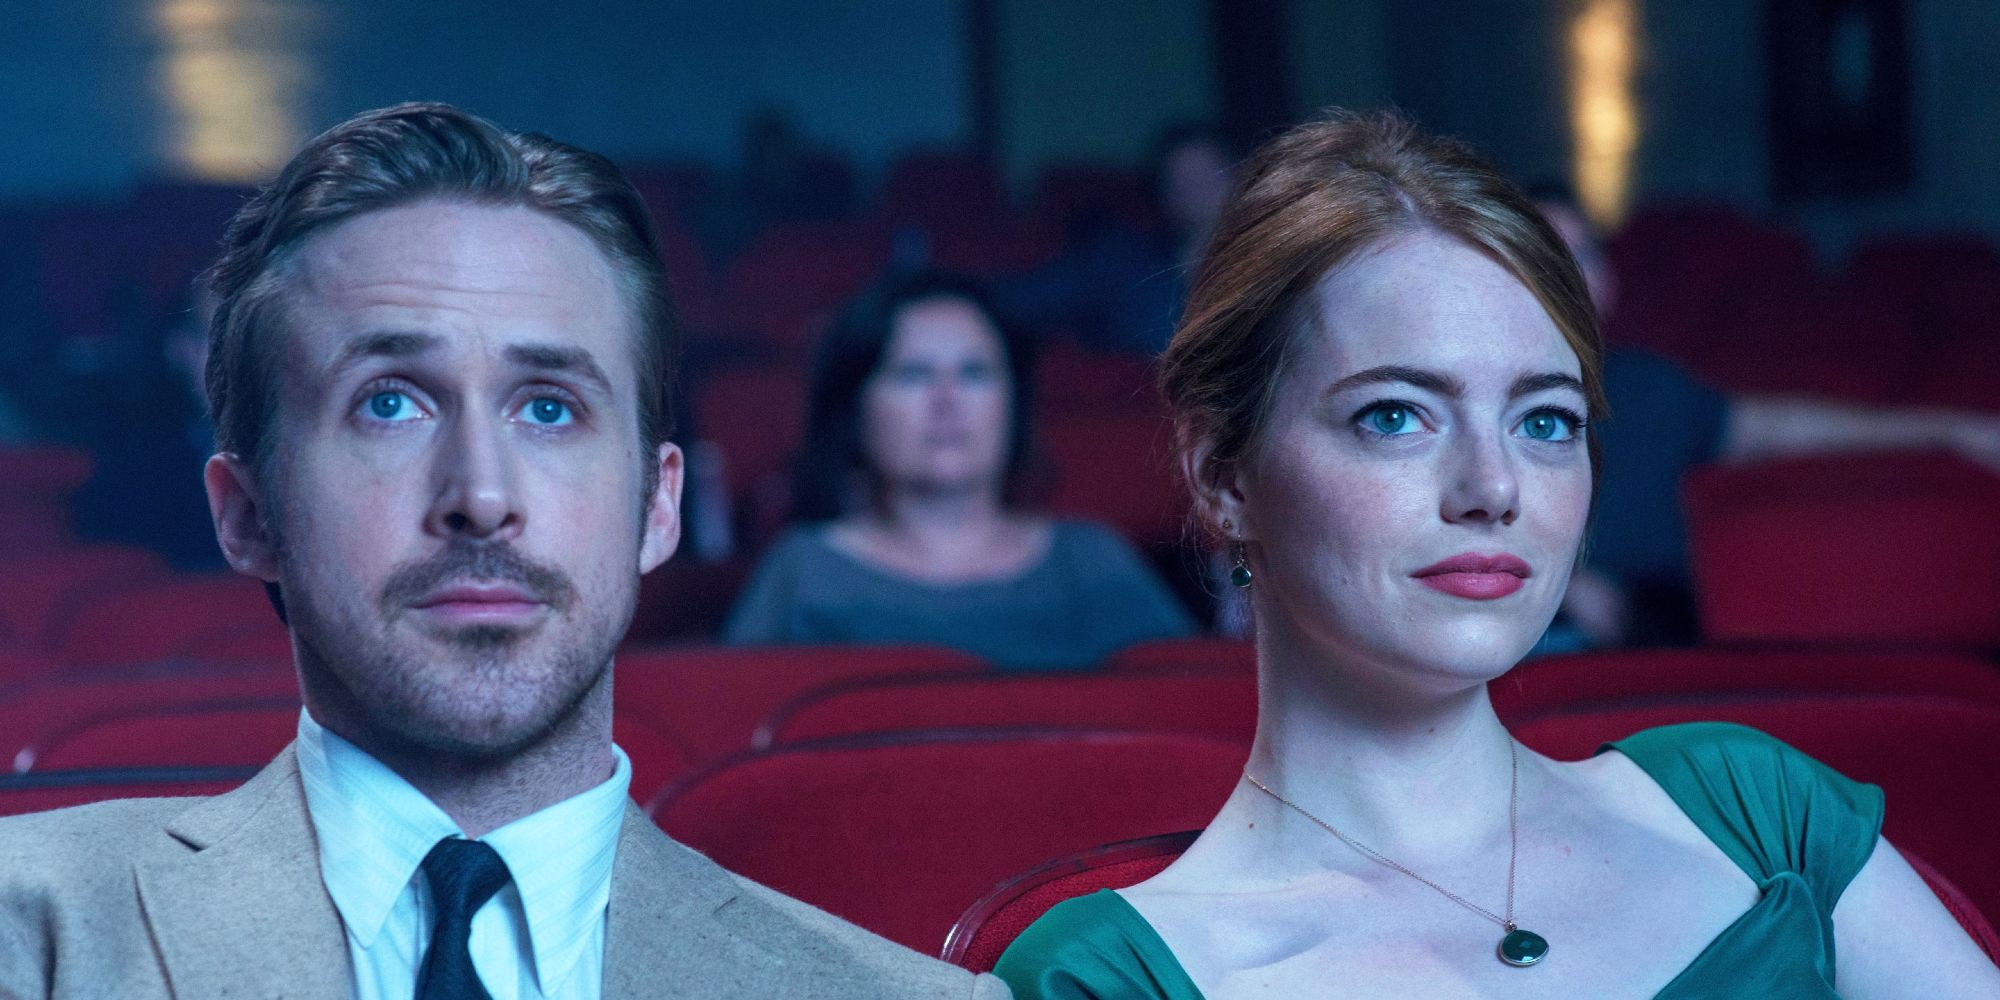 Sebastian and Mia sit in a movie theatre together in La La Land